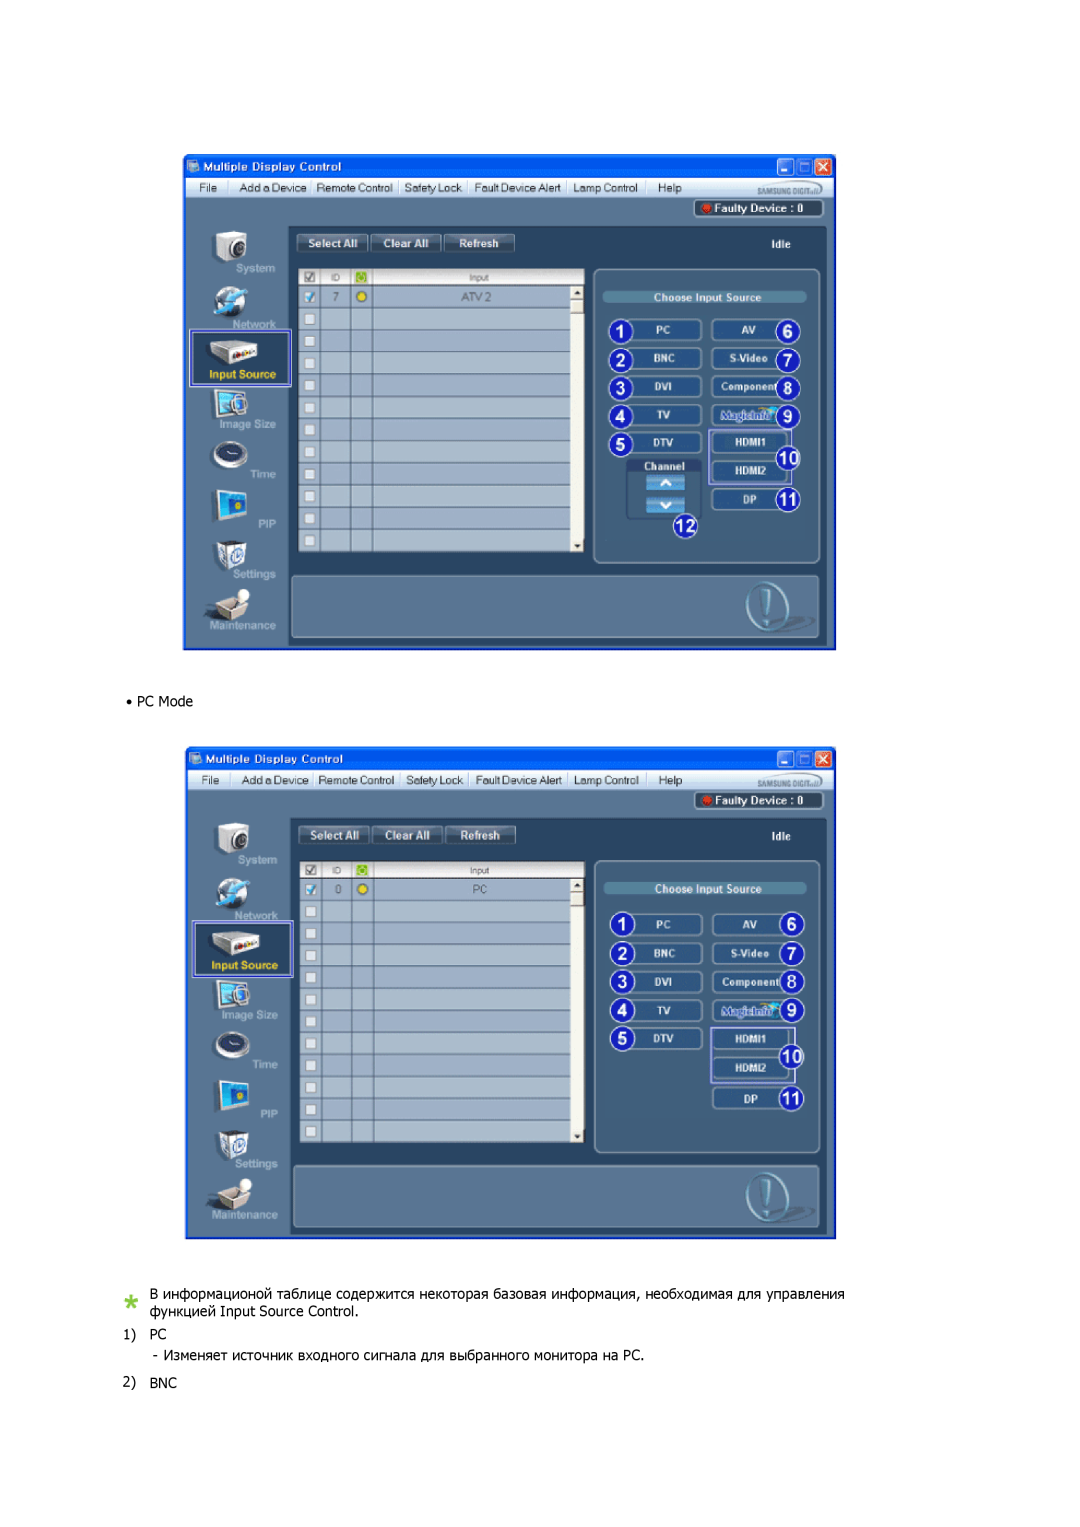 Samsung LH32CRTMBC/EN, LH32CRSMBD/EN PC Mode, 1 PC Изменяет источник входного сигнала для выбранного монитора на PC, 2 BNC 